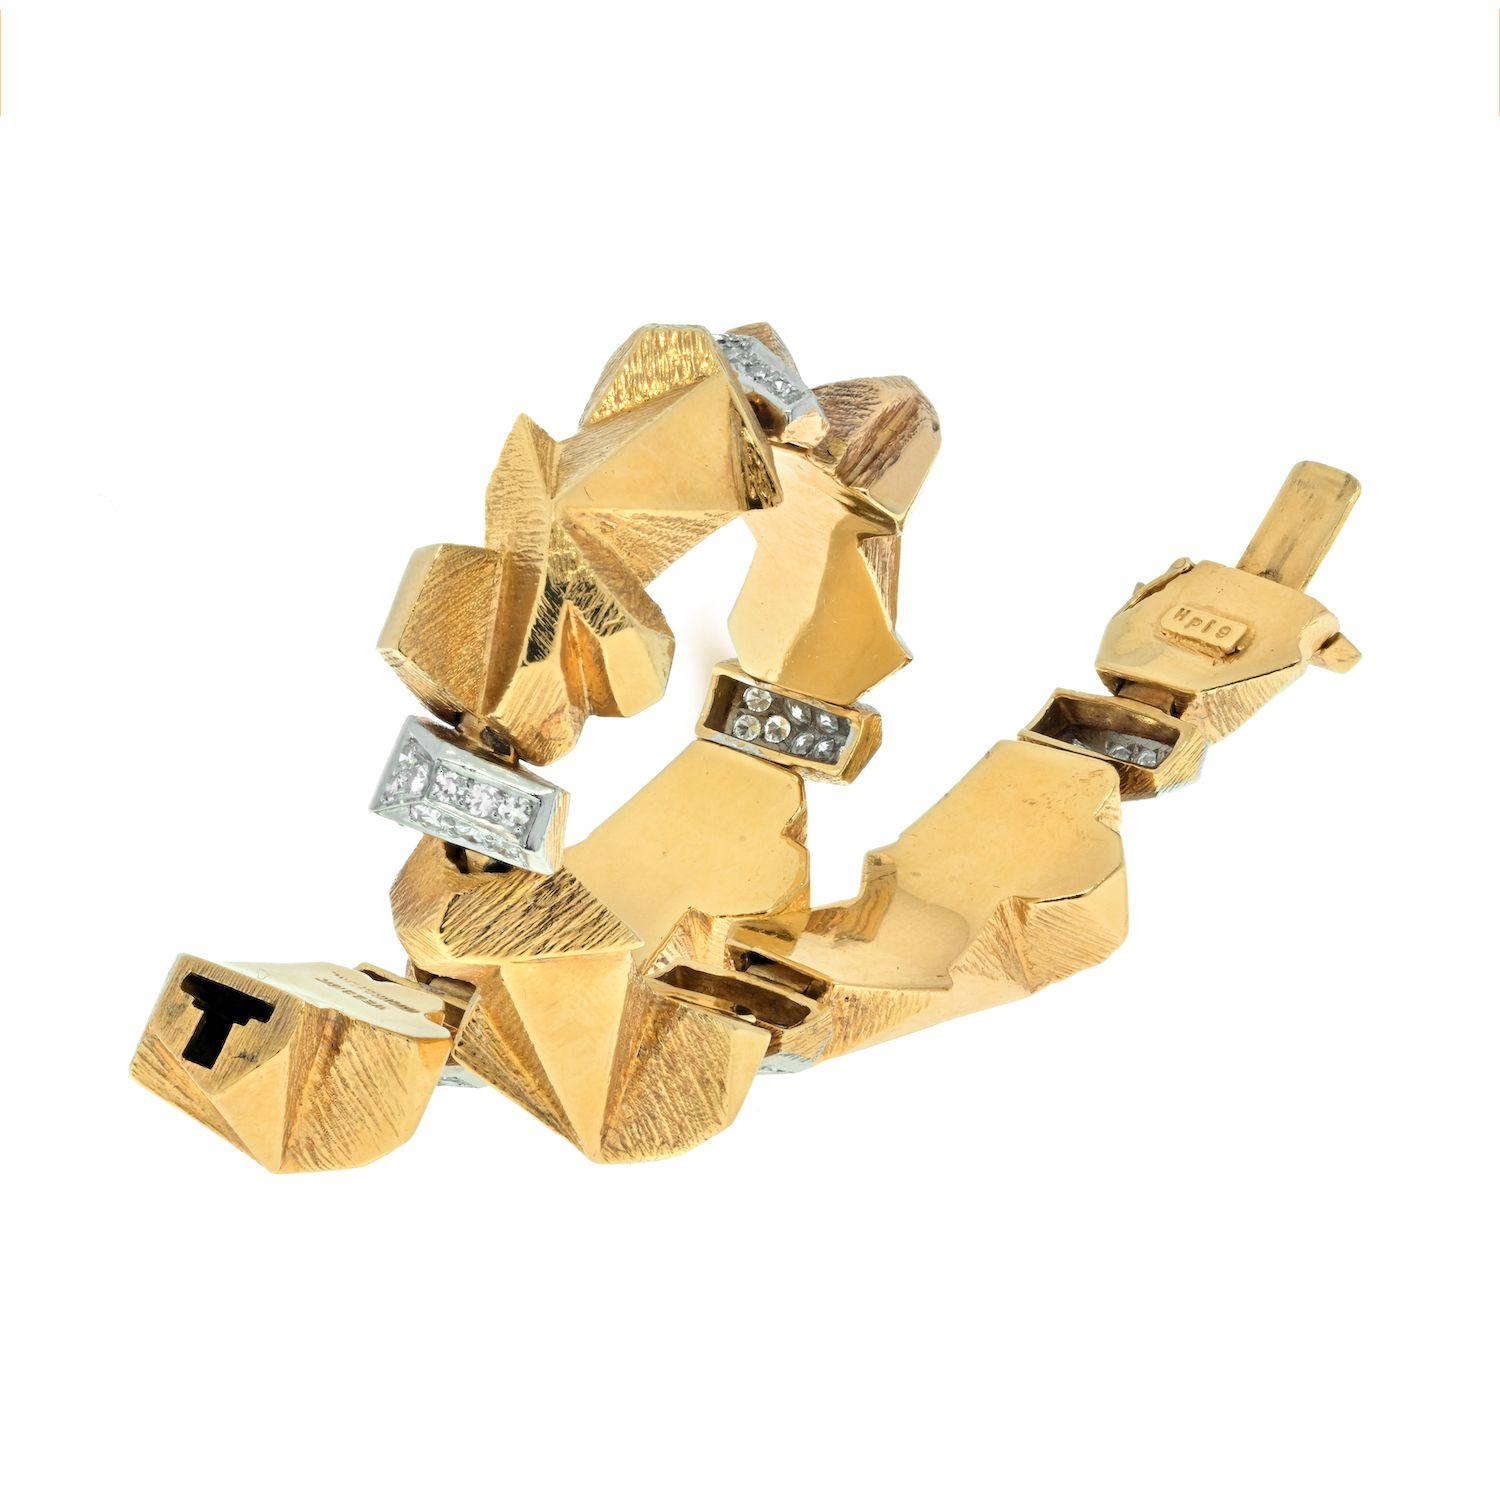 Ce bracelet très inhabituel de David Webb est conçu de manière très articulée, avec des pépites d'or ou des 